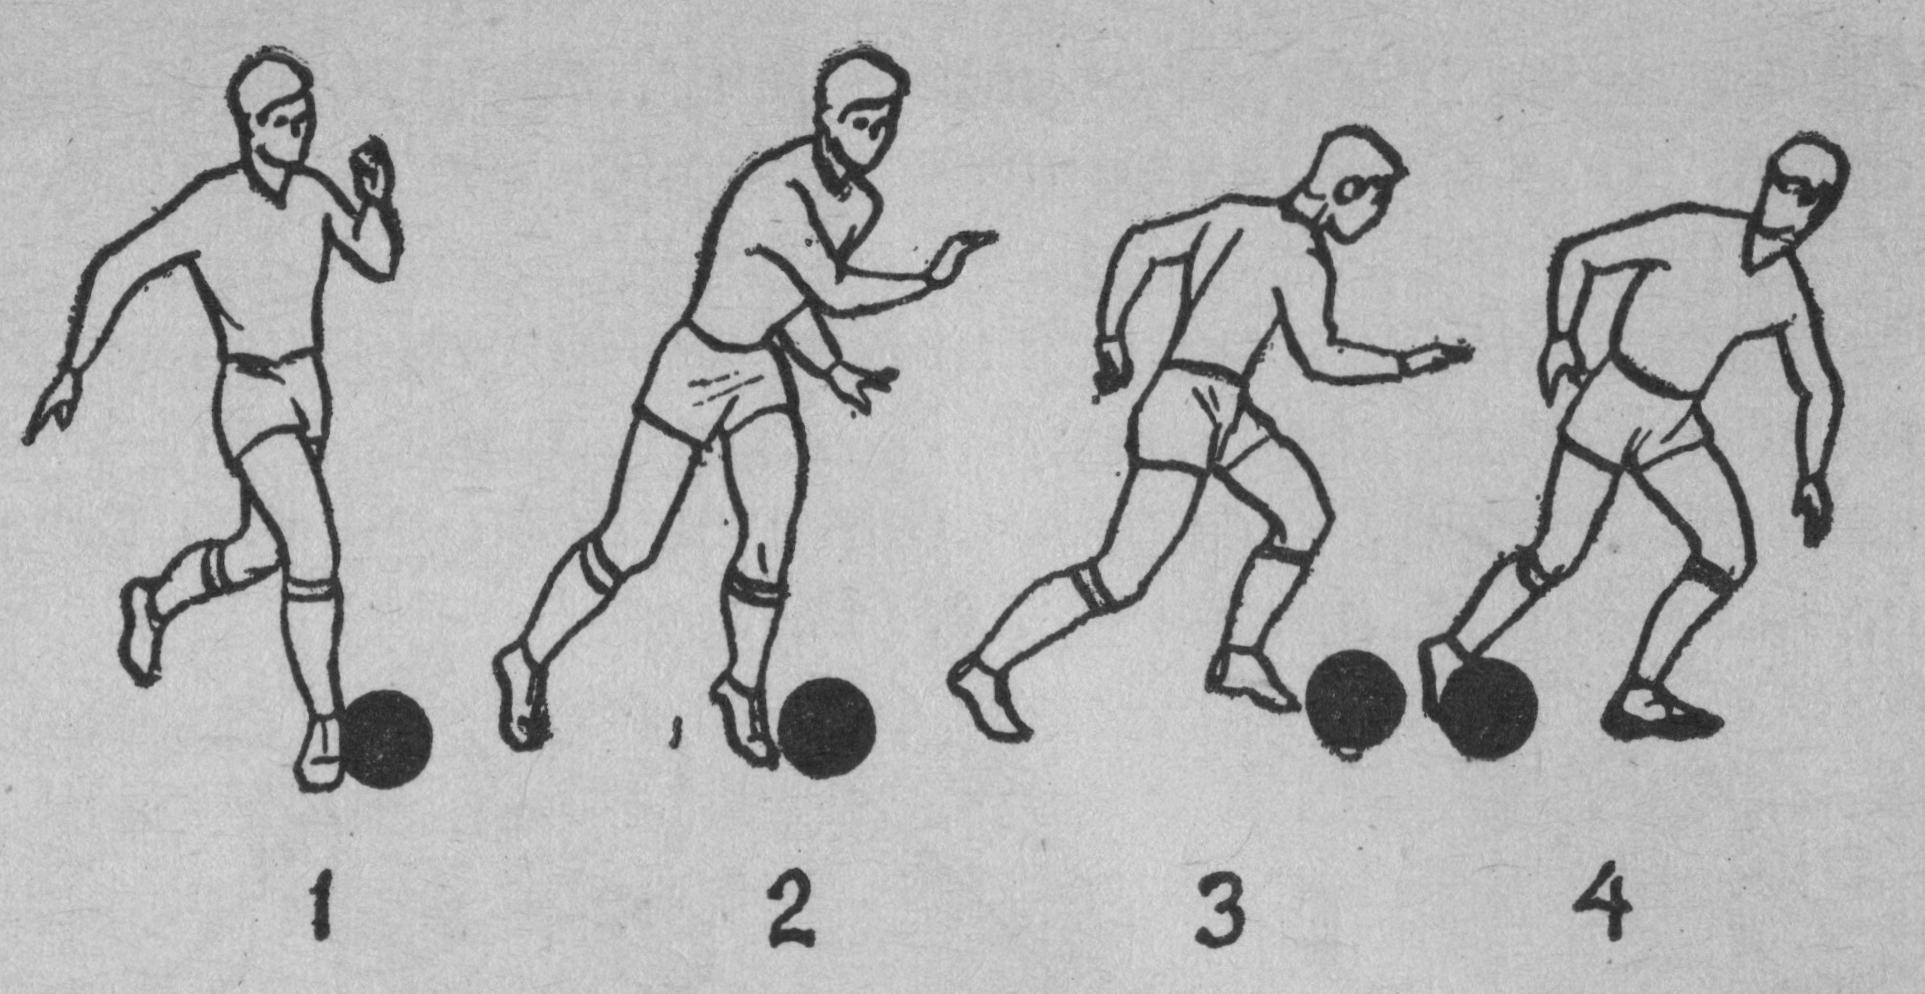 Игра в мяч в футболе это. Ведение мяча ногой в футболе. Техники ведения мяча ногой в футболе. Приемы ведения мяча в футболе. Упражнения на технику ведения мяча в футболе.